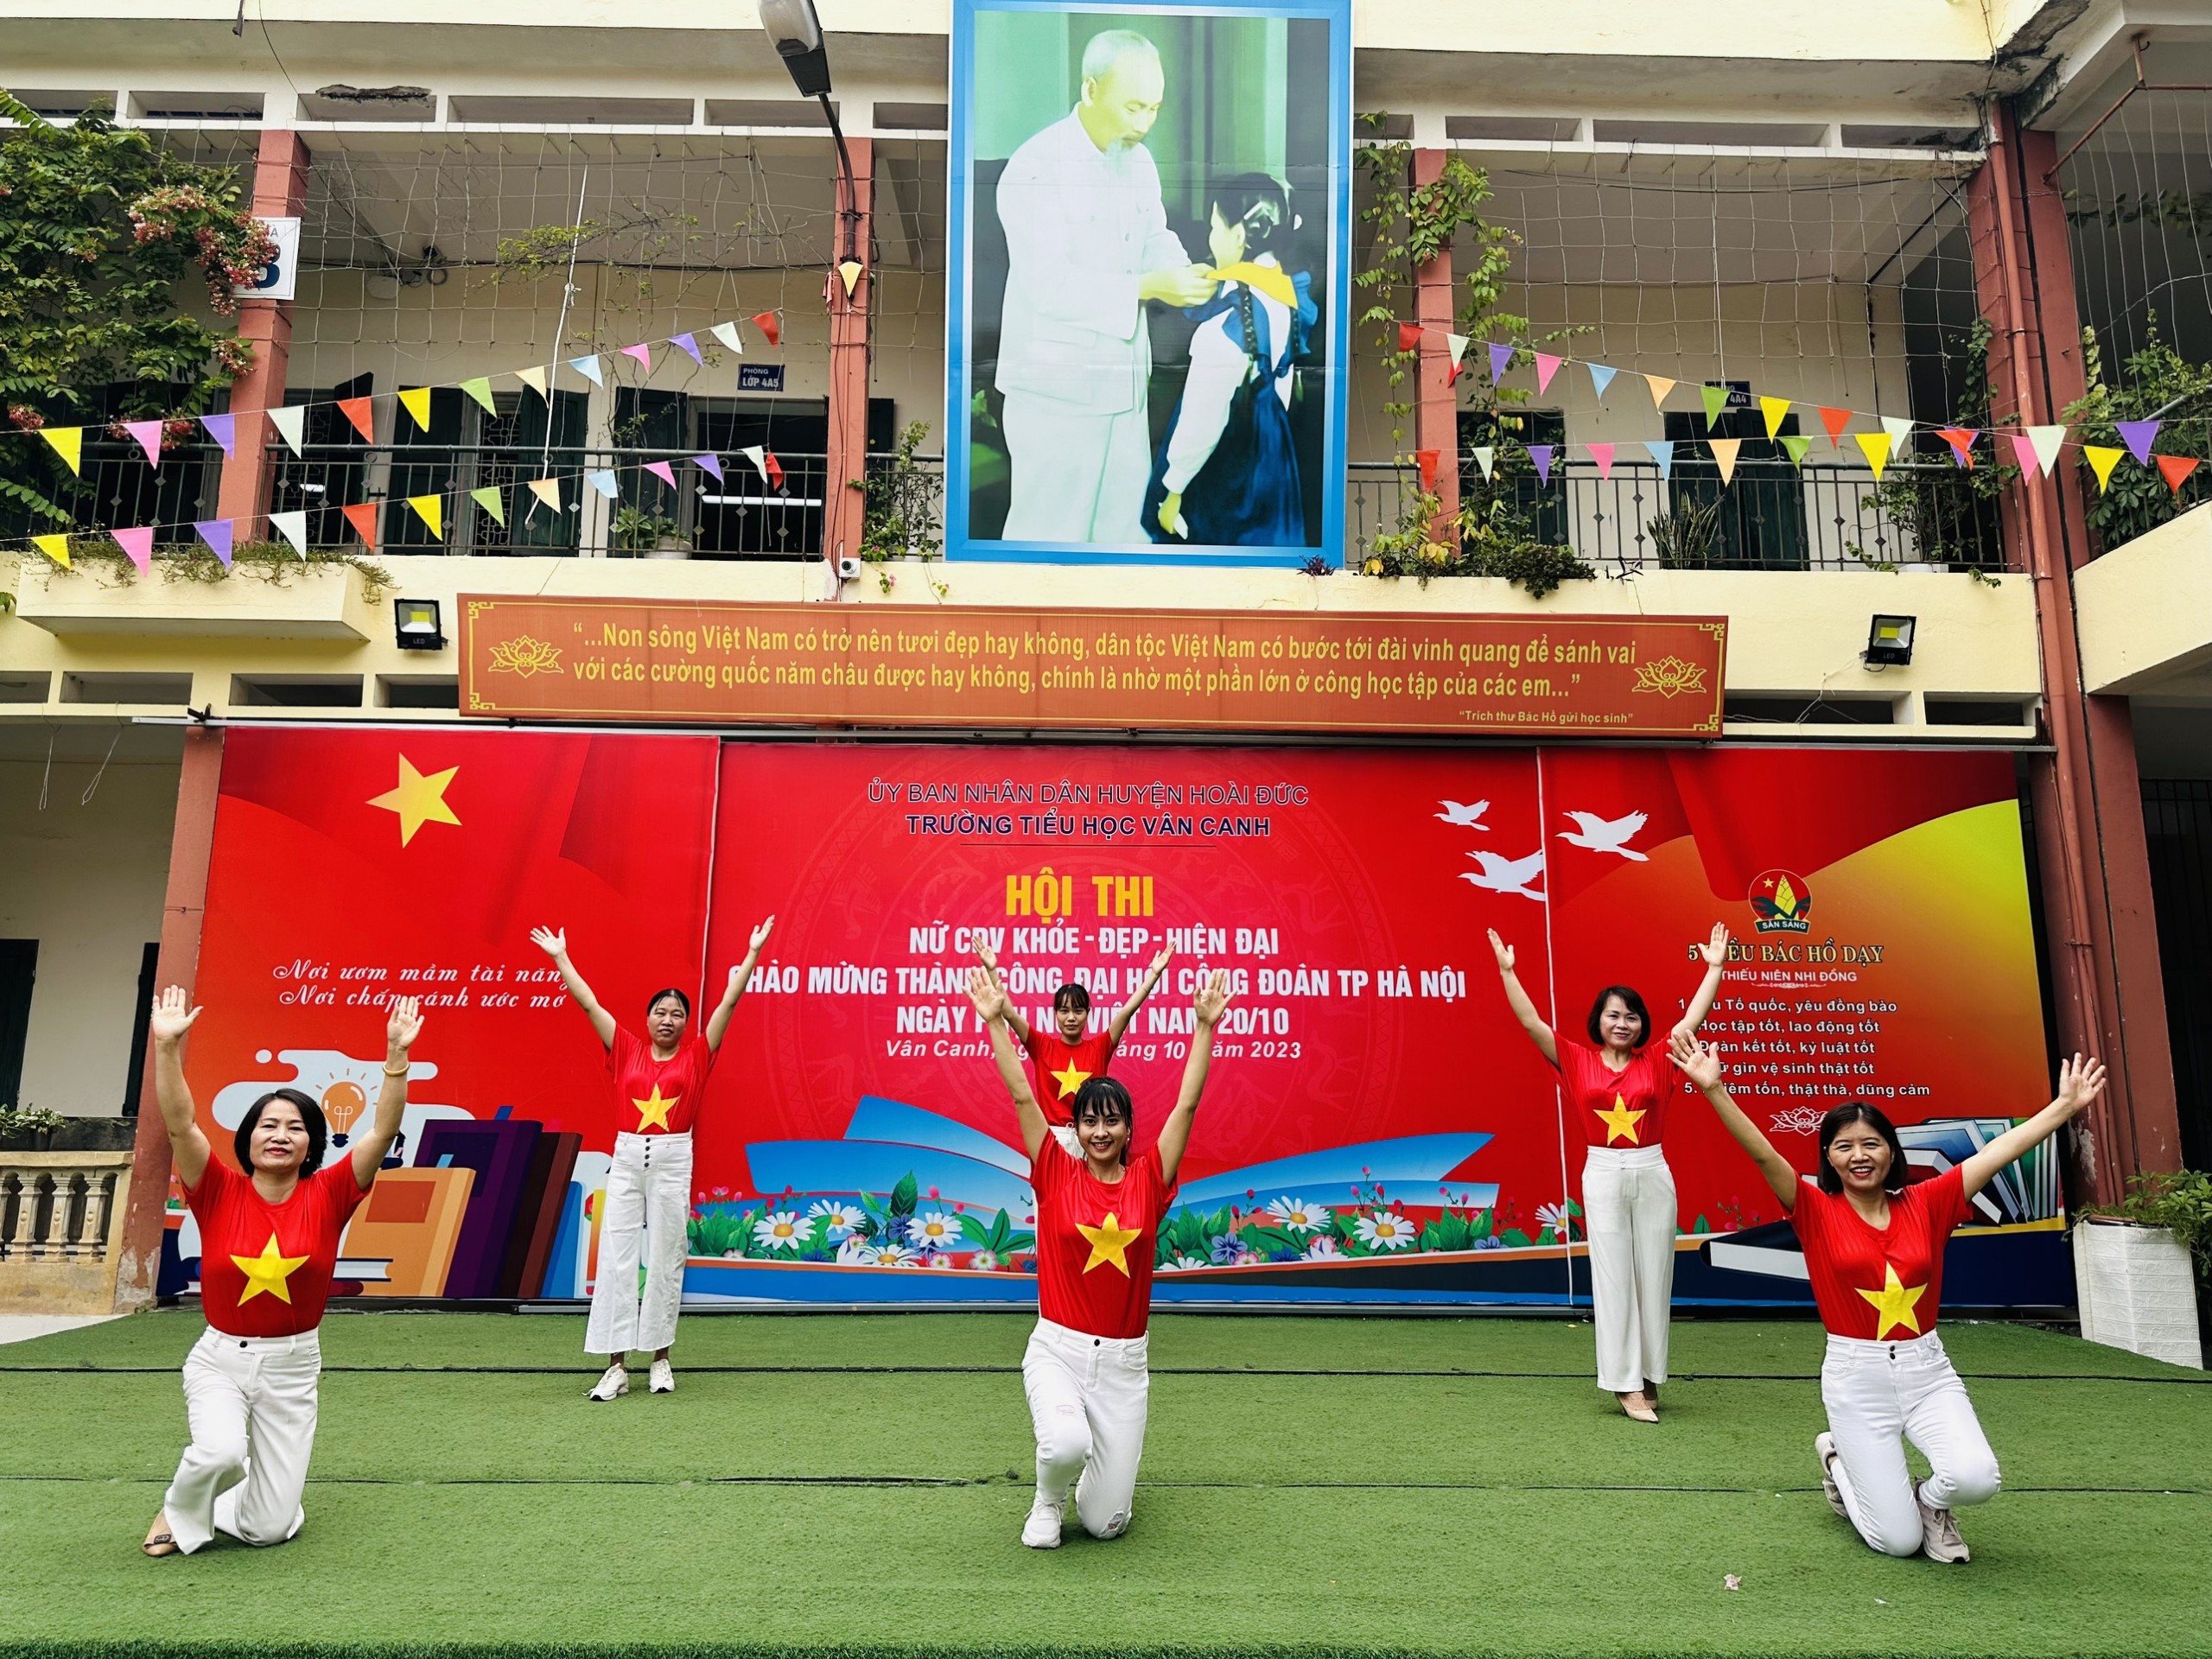 Tiểu học Vân Canh sôi nổi với các hoạt động chào mừng ngày Phụ nữ Việt Nam 20/10.